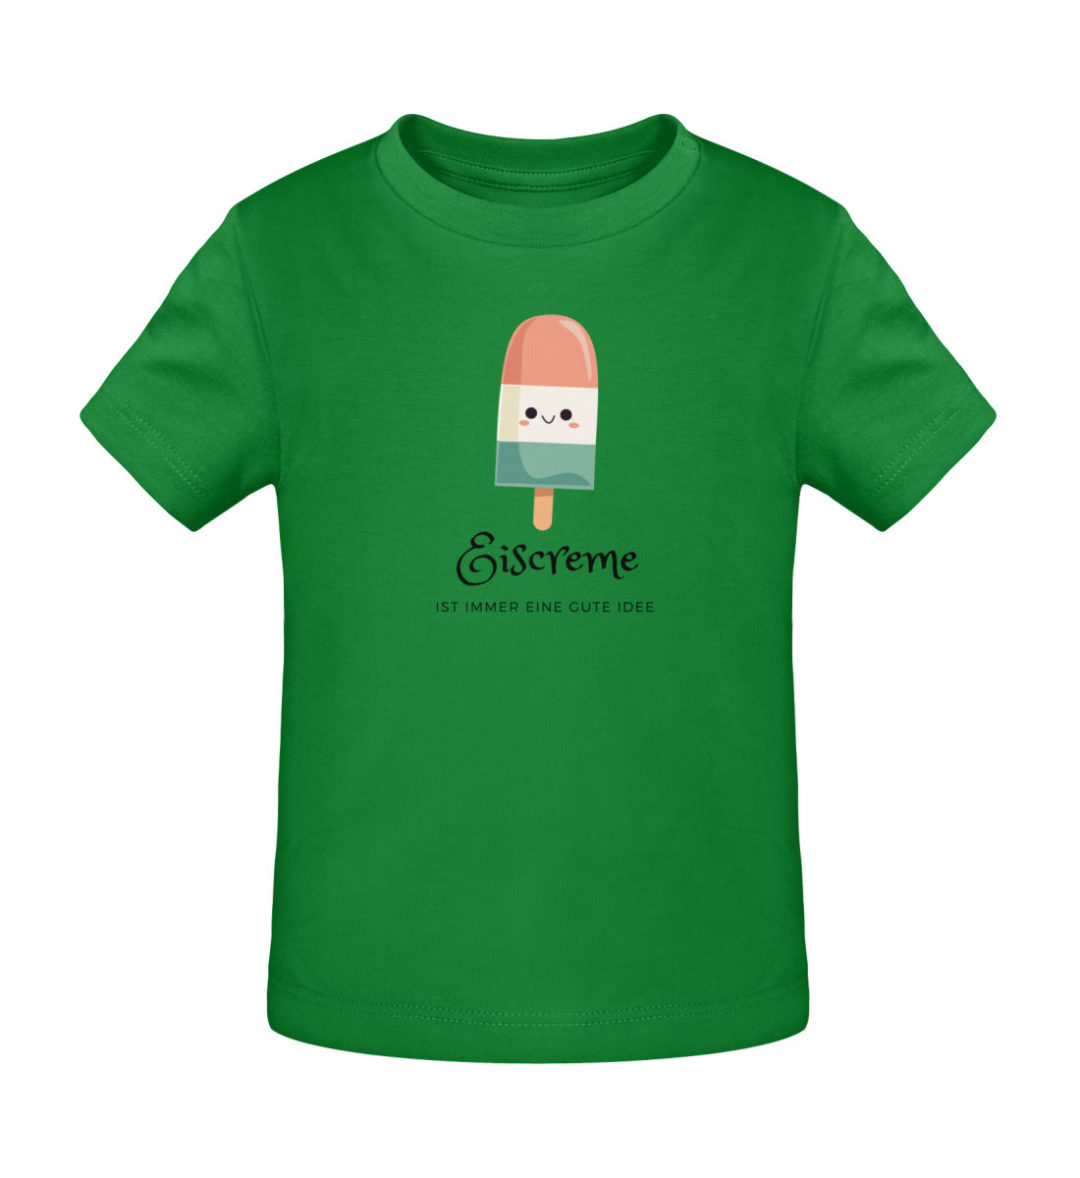 Eiscreme ist immer eine gute Idee - Baby Creator T-Shirt ST/ST-6879